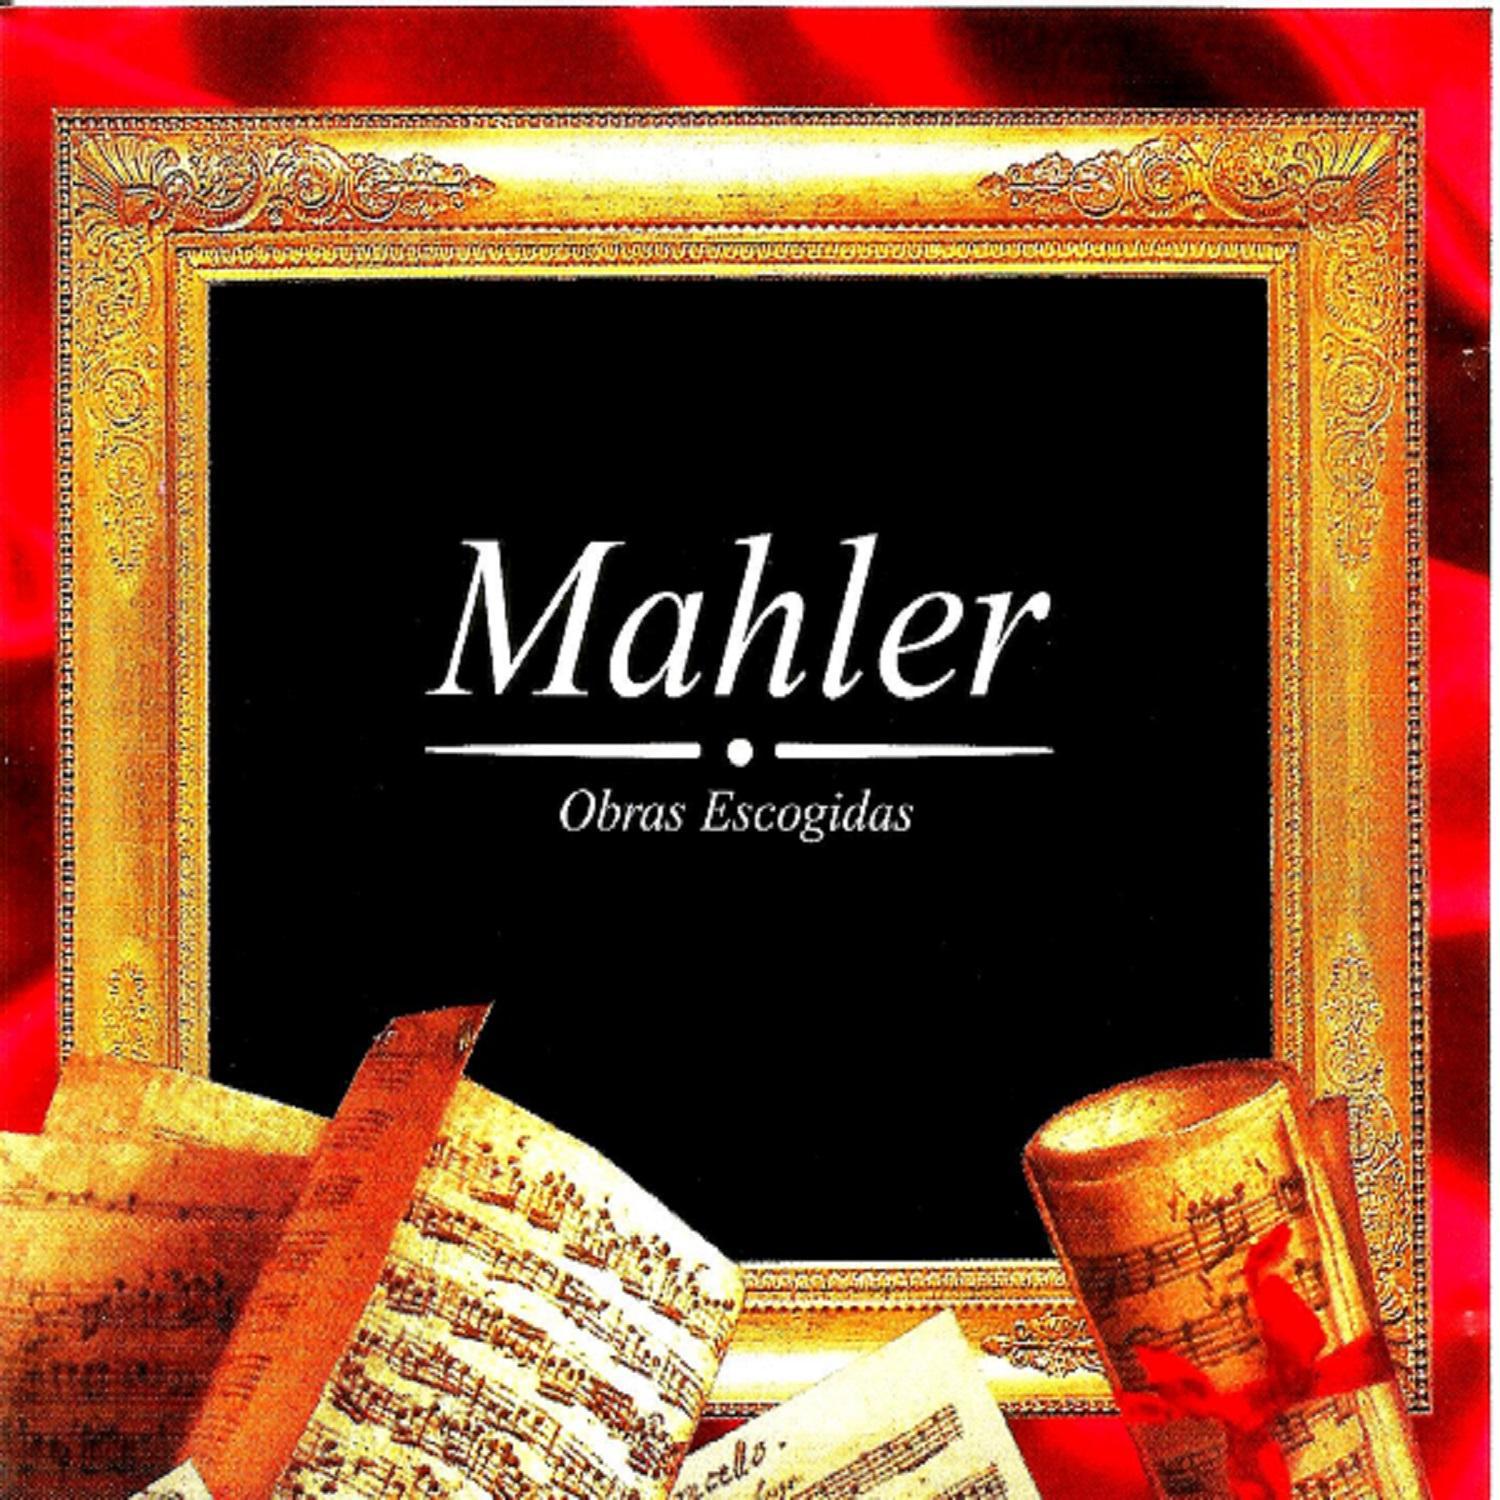 Mahler, Obras Escogidas专辑